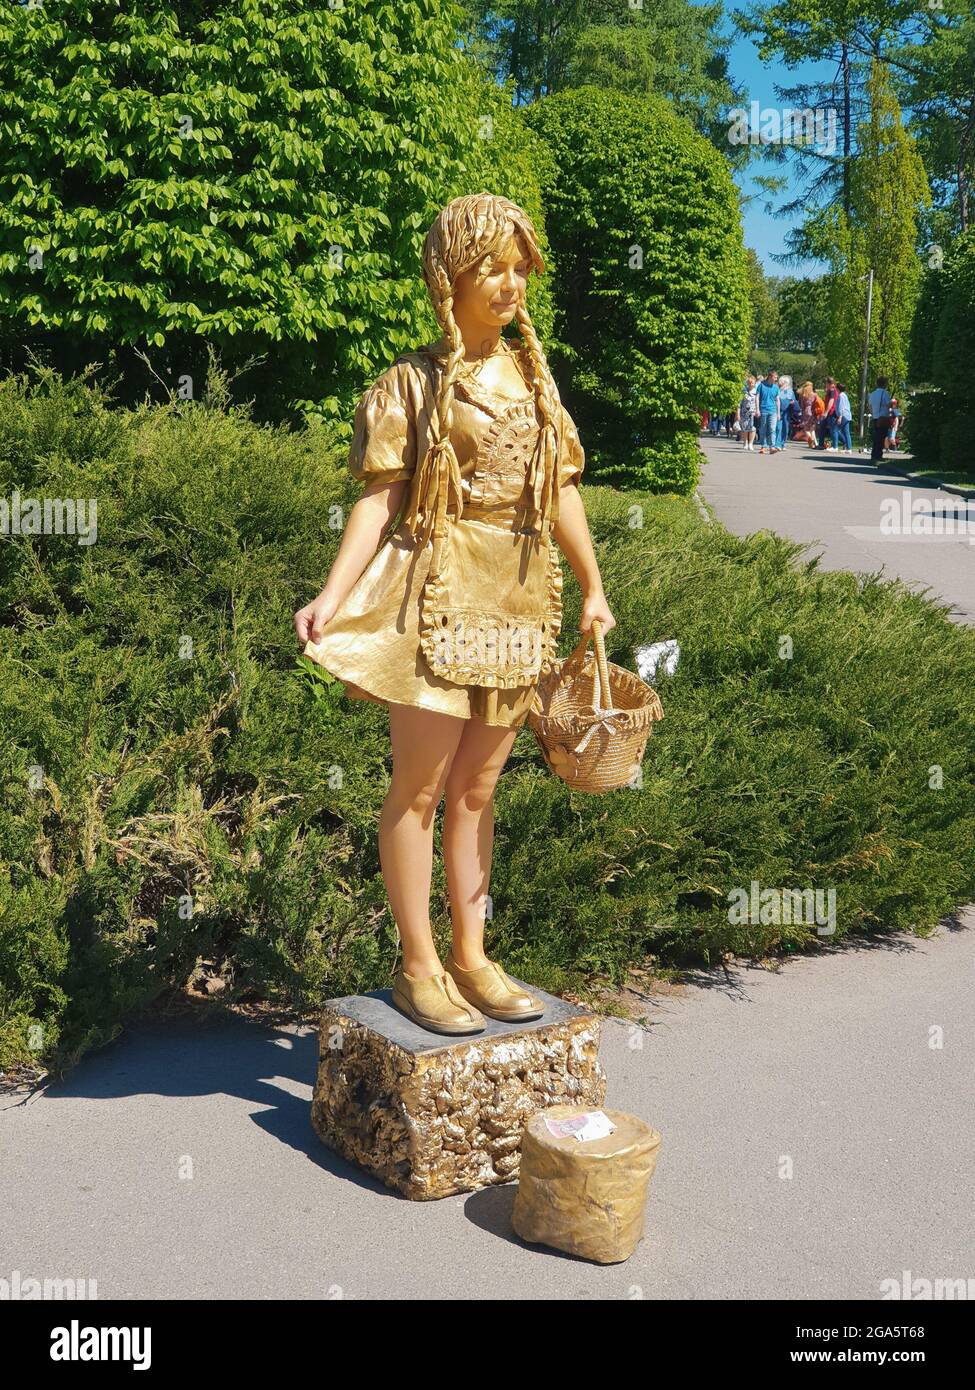 Kiew, Ukraine-30. April 2018: Auf einem Felsen stehendes Mädchen mit Goldspray, das Besucher im Nationalen Botanischen Garten von Kiew willkommen heißt. Liiving-Statuen Stockfoto